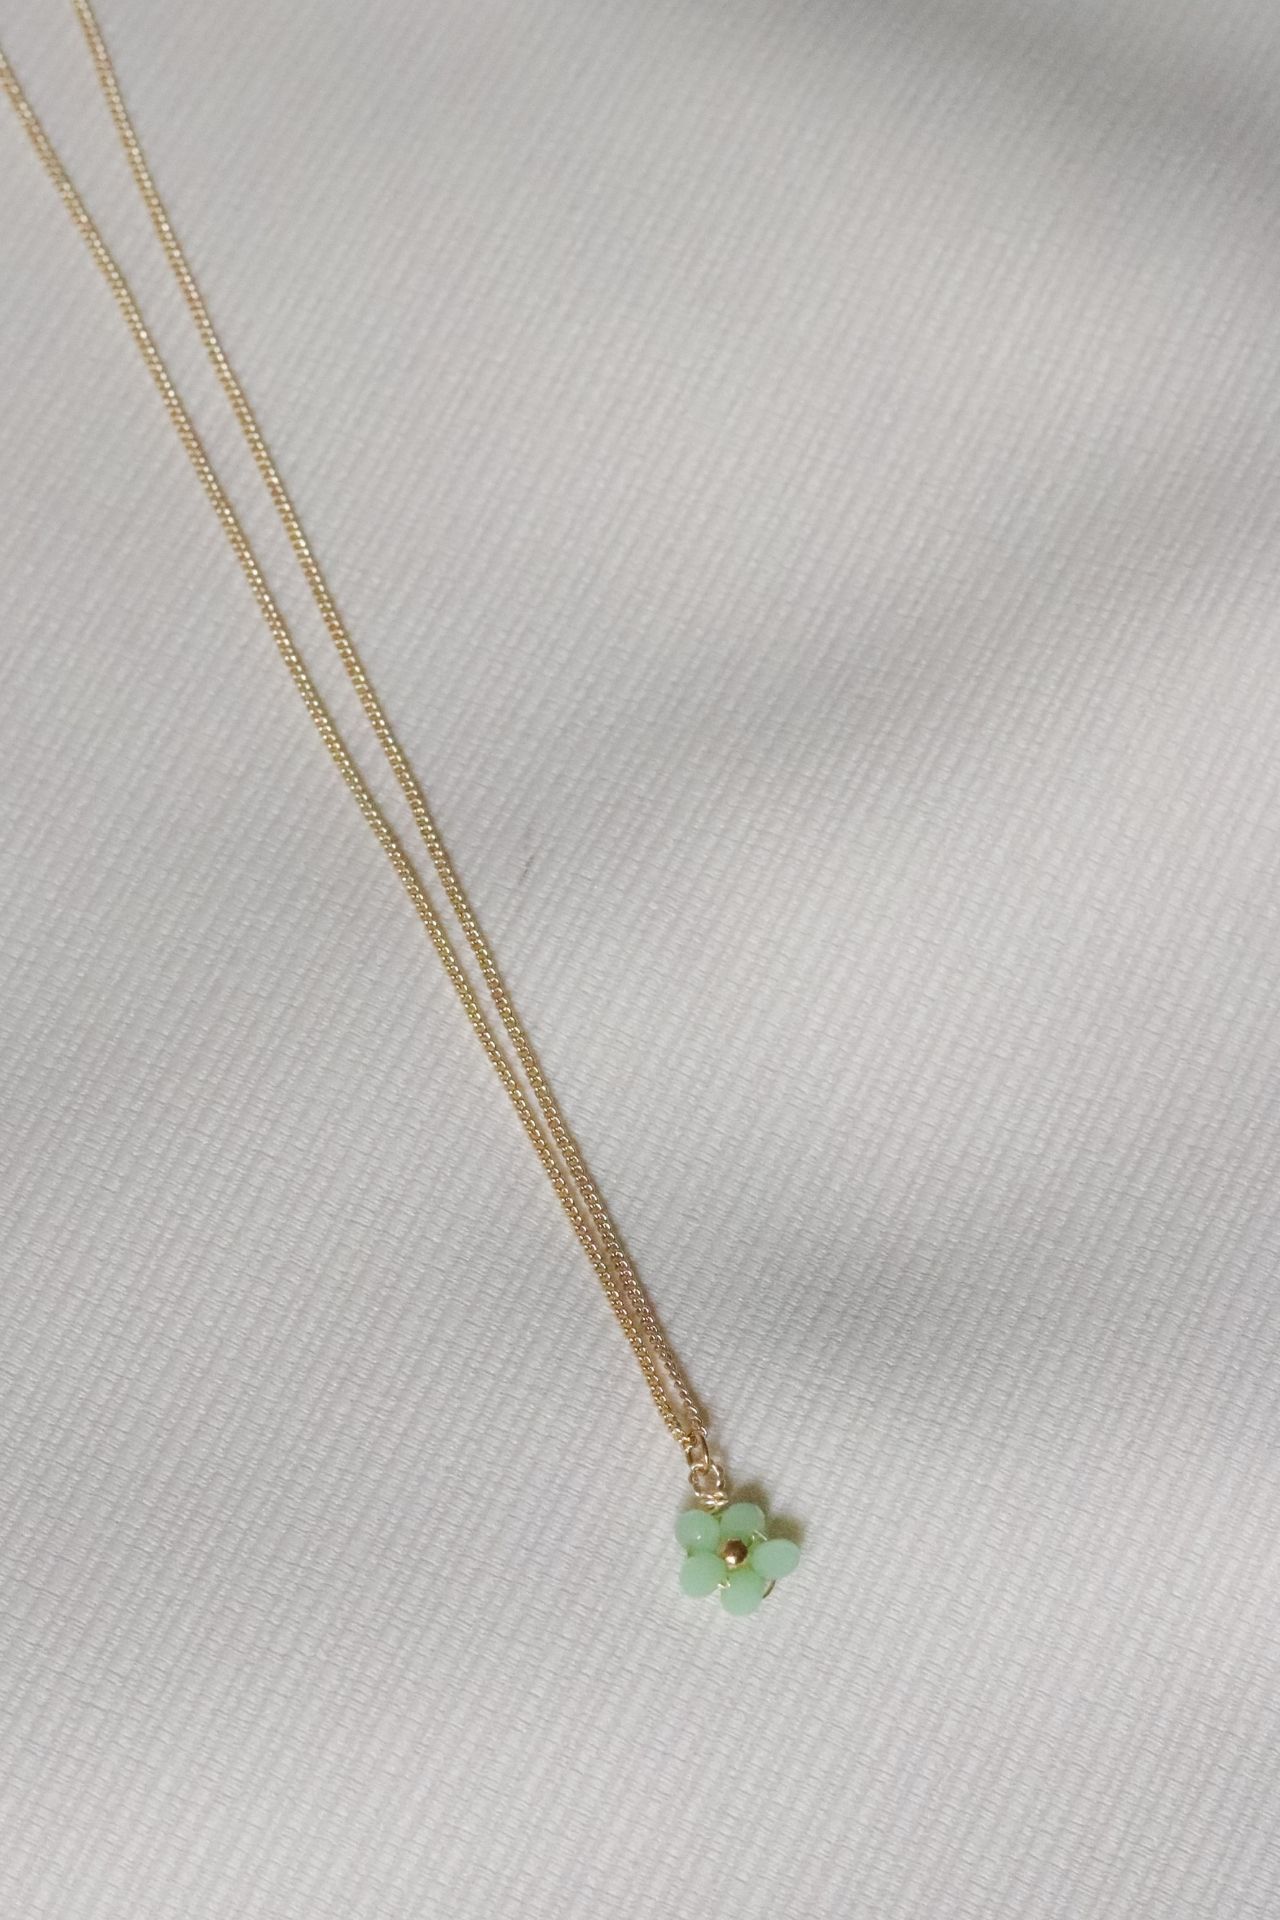 Collar Dalia, flor verde y lila. Material: Acero. El largo de la cadena es de 45 cm, el grosor de la cadena 1mm y el dije mide 1.3cm de alto. 
